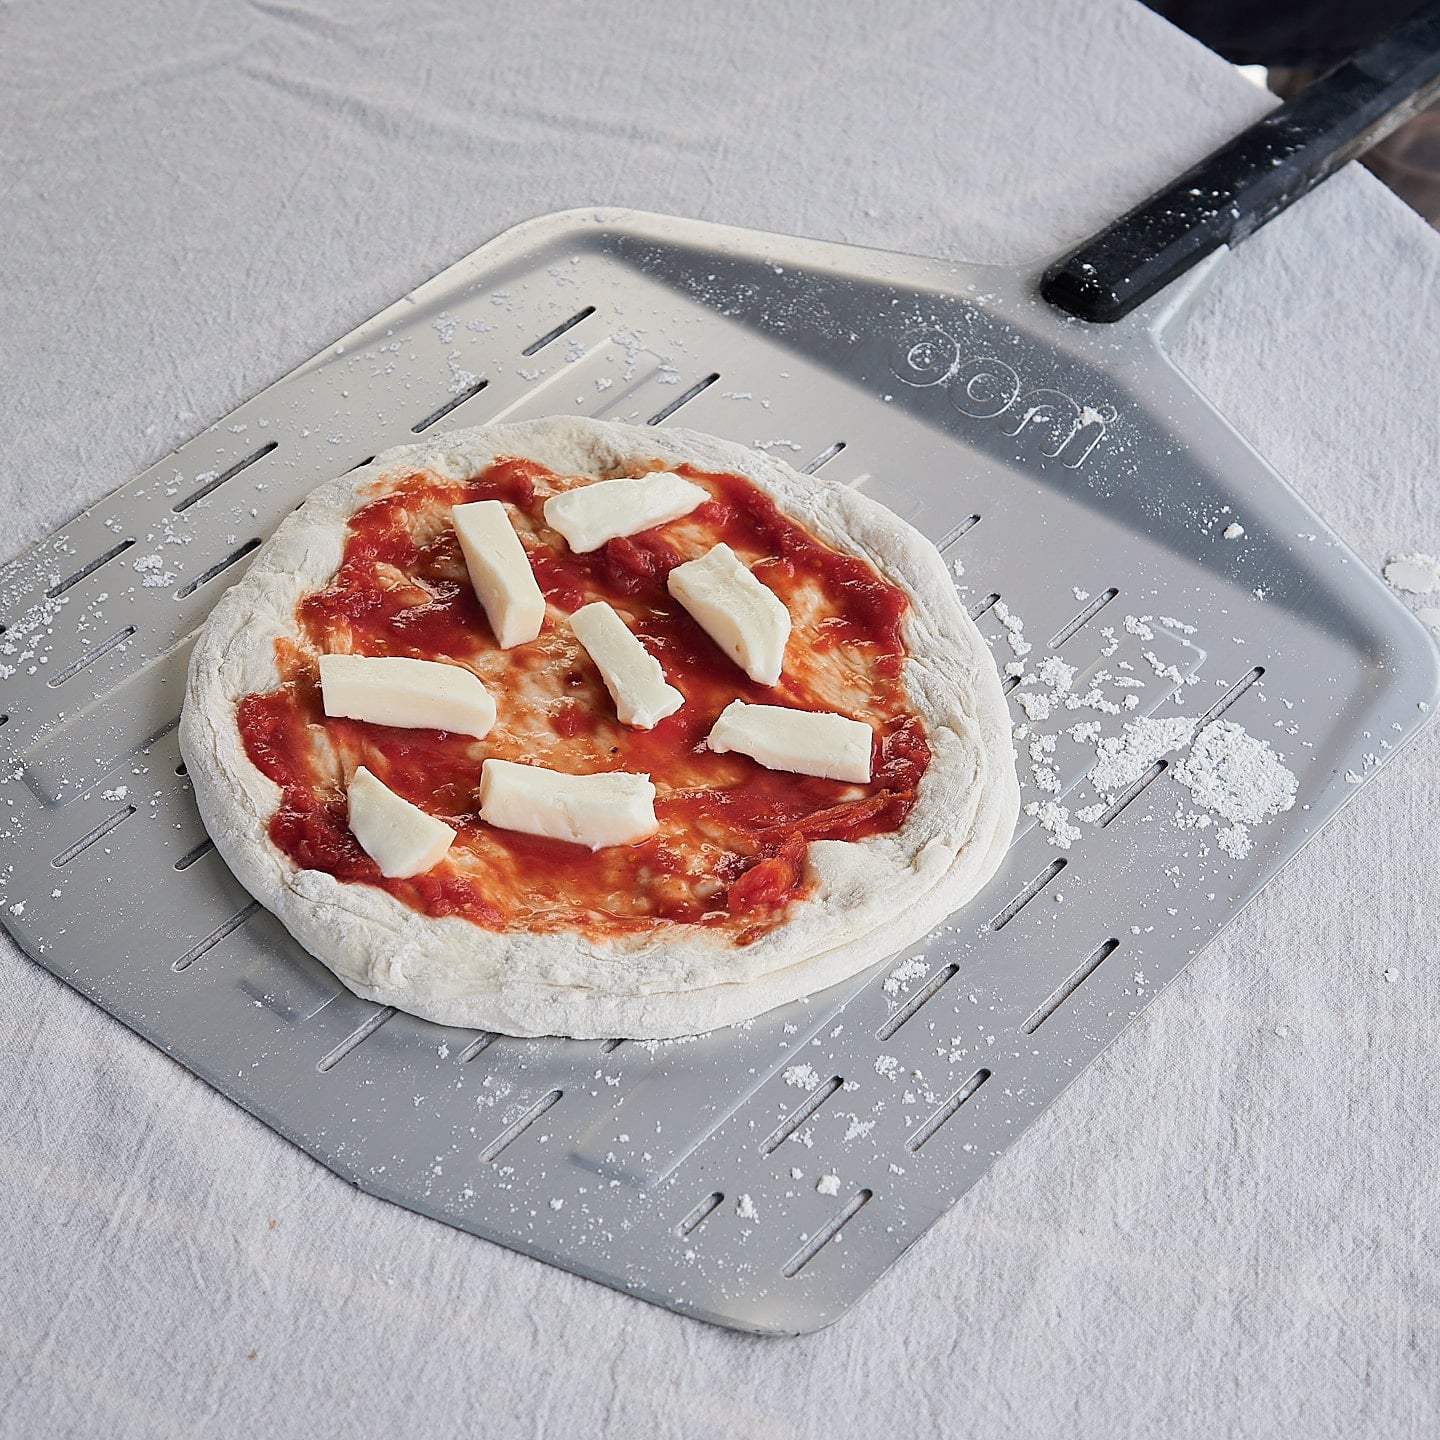 Læg mozzarella på pizzaen